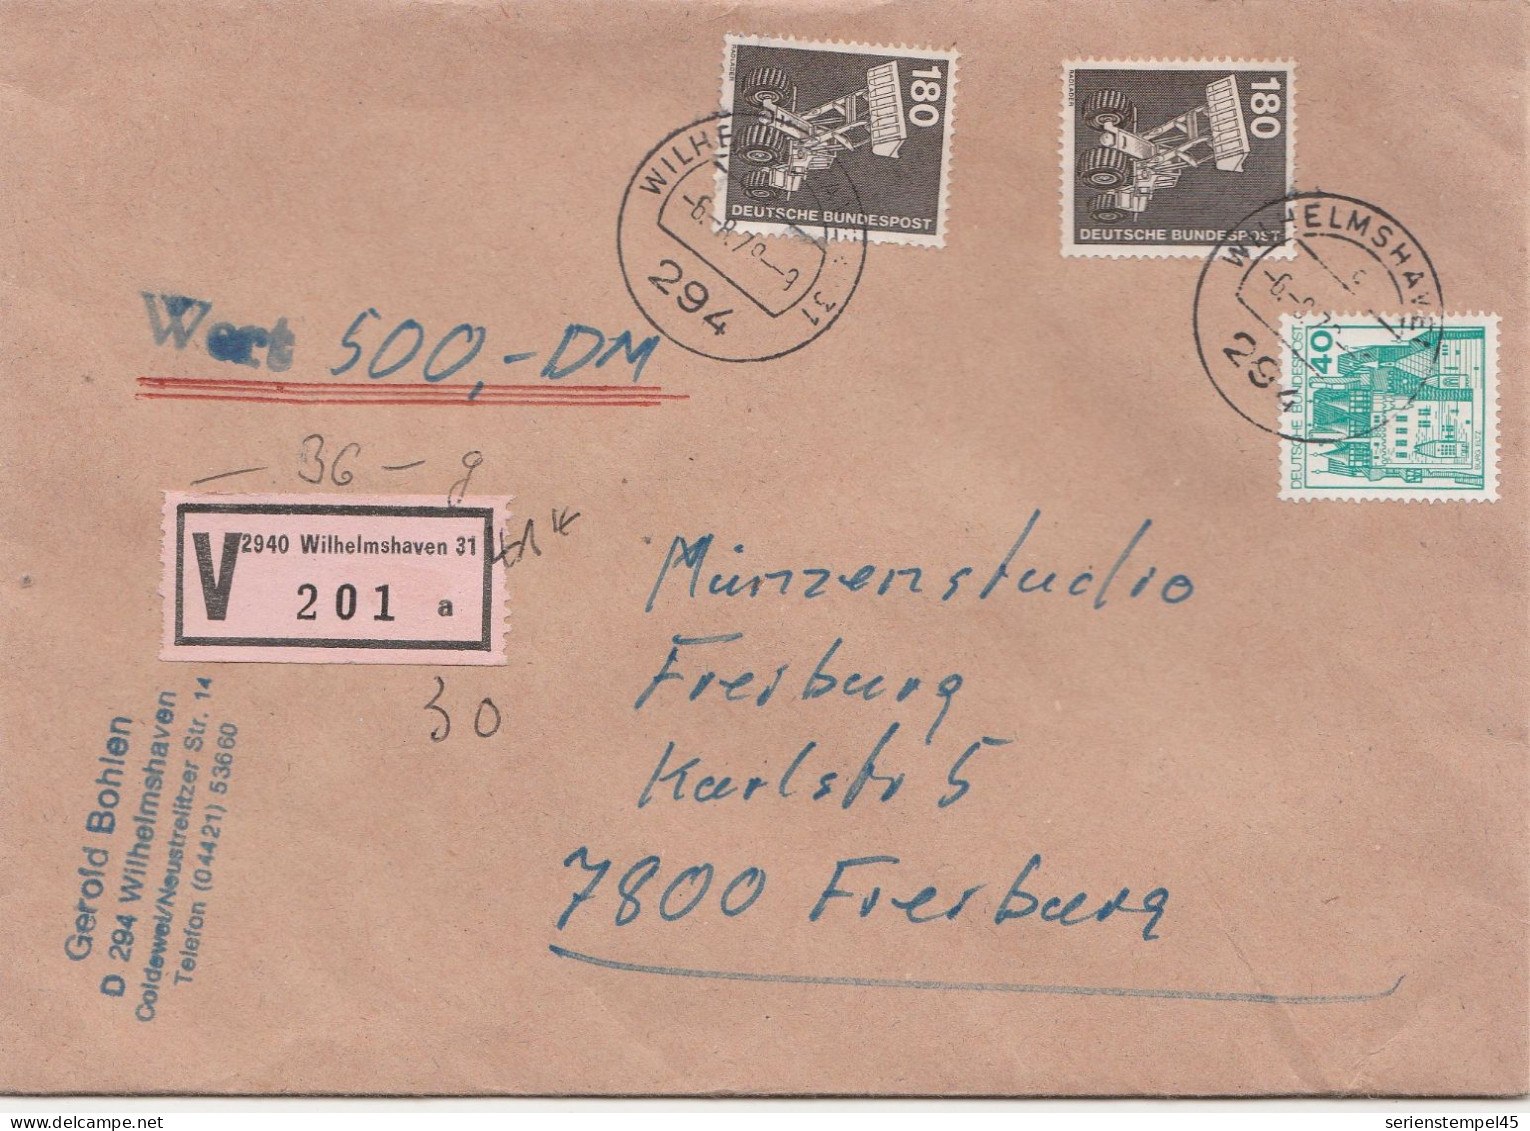 Bund Wertbrief 500 DM Mit V Zettel 2940 Wilhelmshaven Porto 4 DM 1979 - R- & V- Vignette